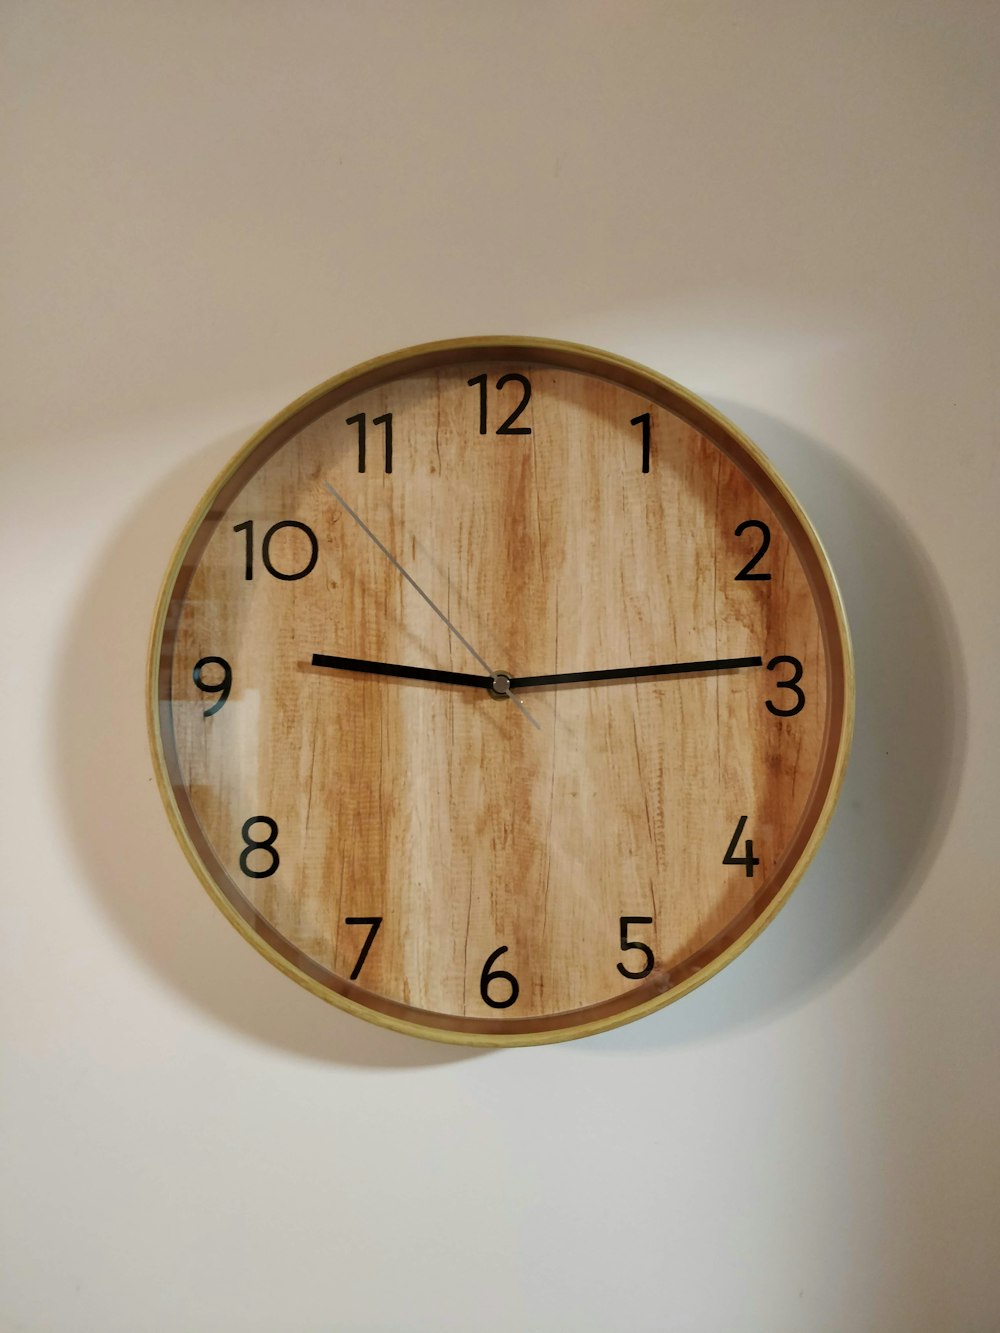 10 00 で茶色の木製の丸い壁時計